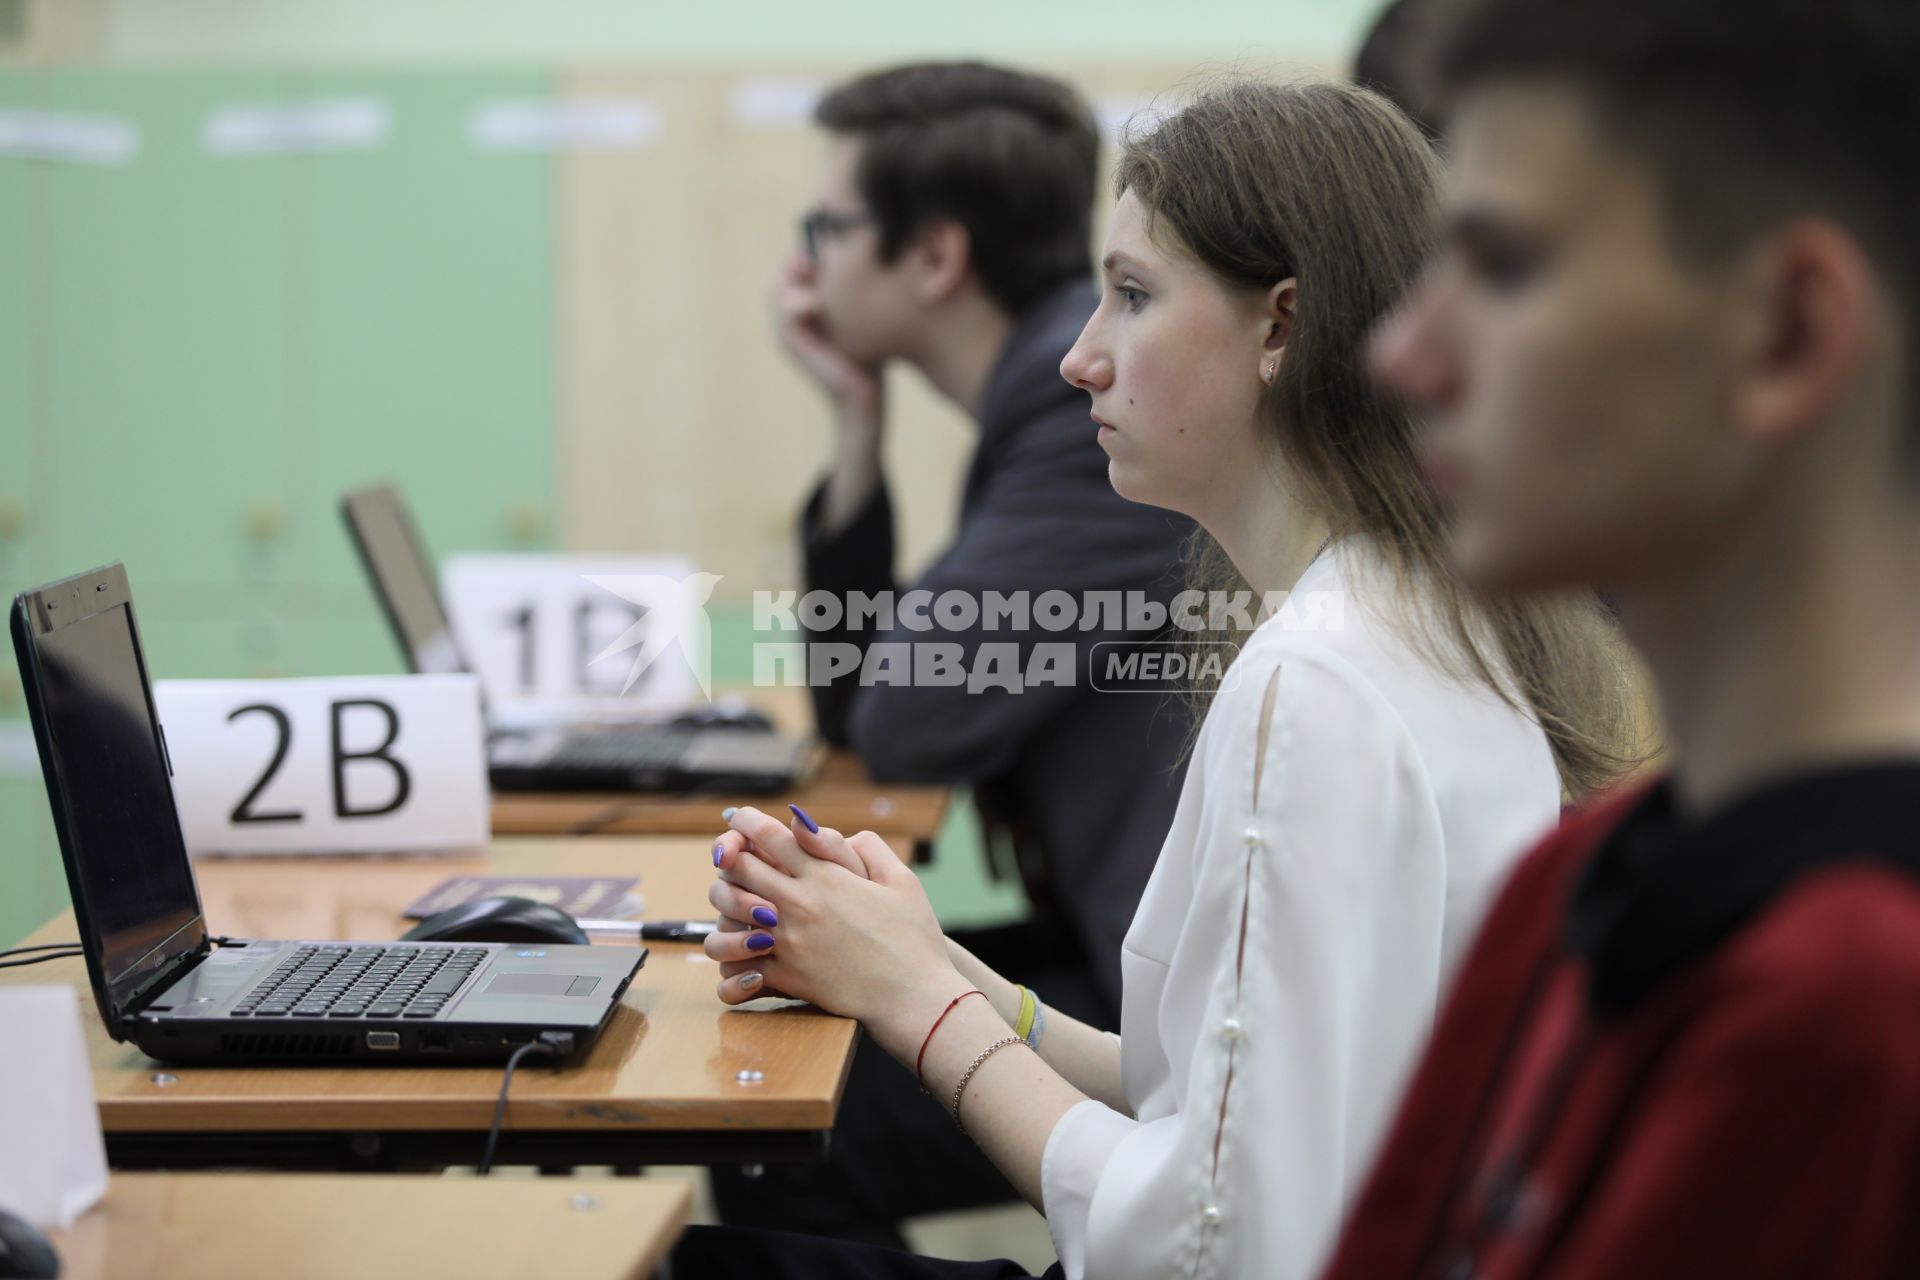 Красноярск. Ученики перед началом единого государственного экзамена (ЕГЭ) по информатике в школе.